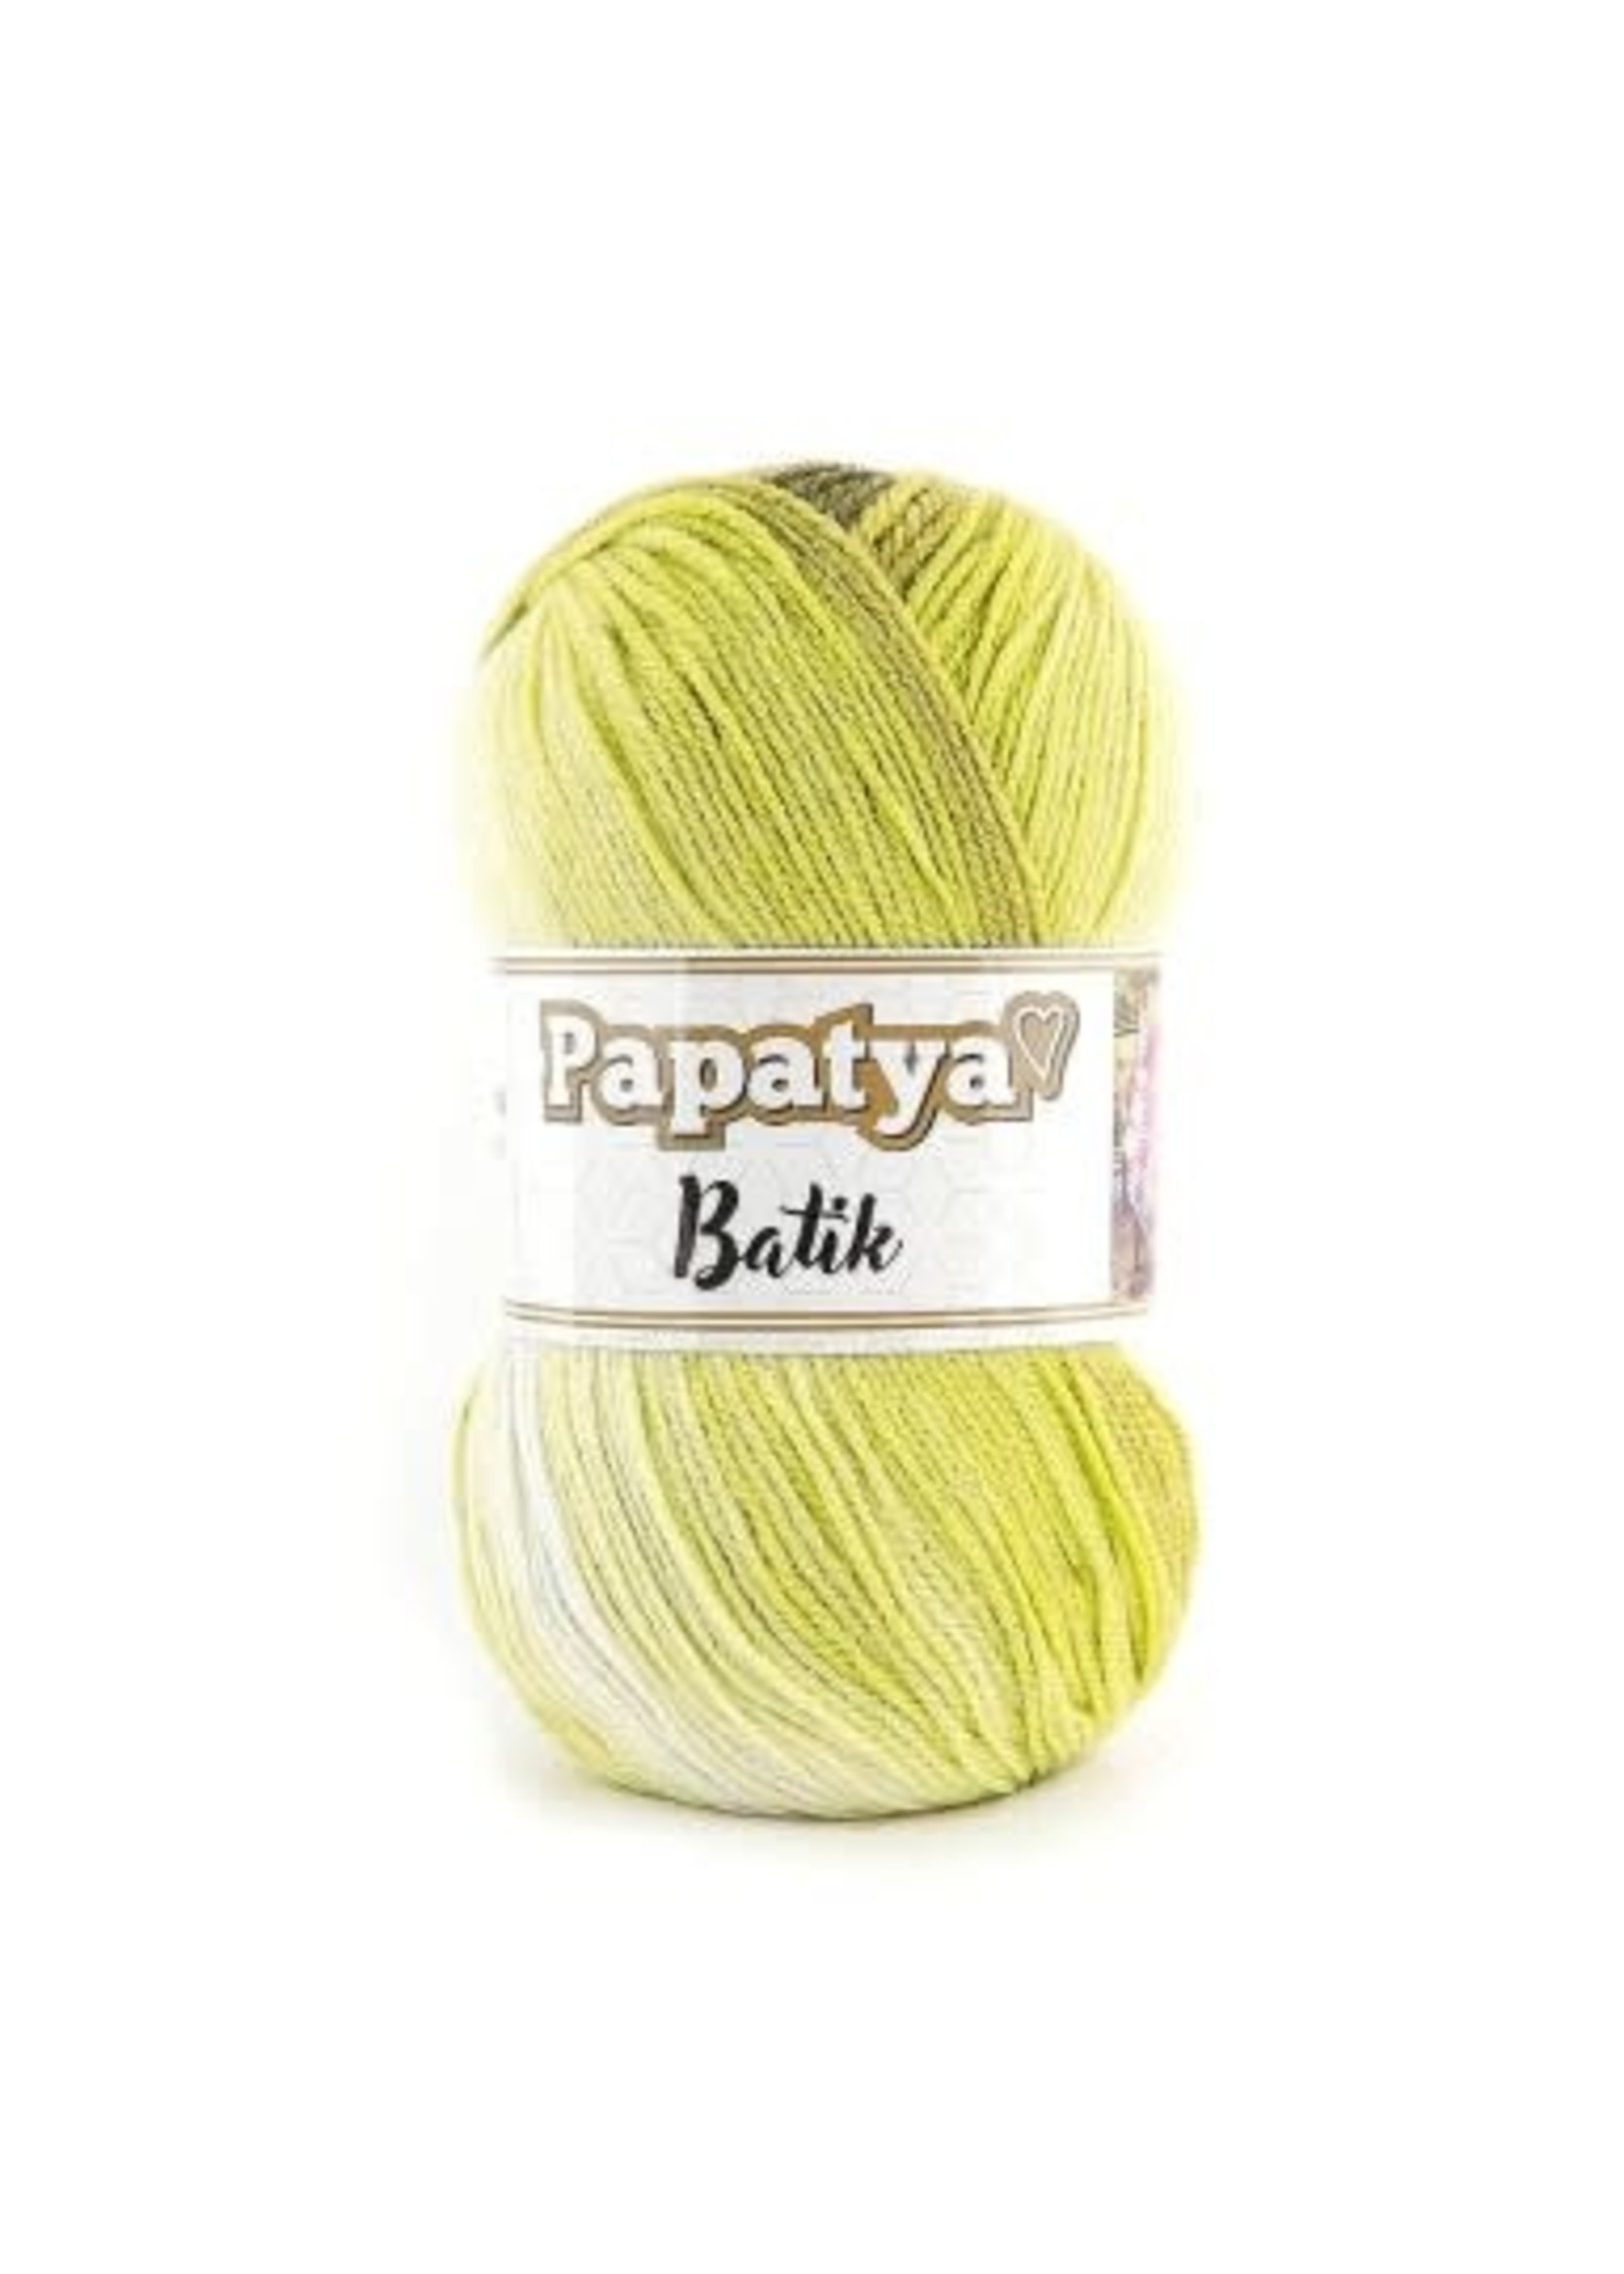 Papatya Papatya Batik - 03 Bos